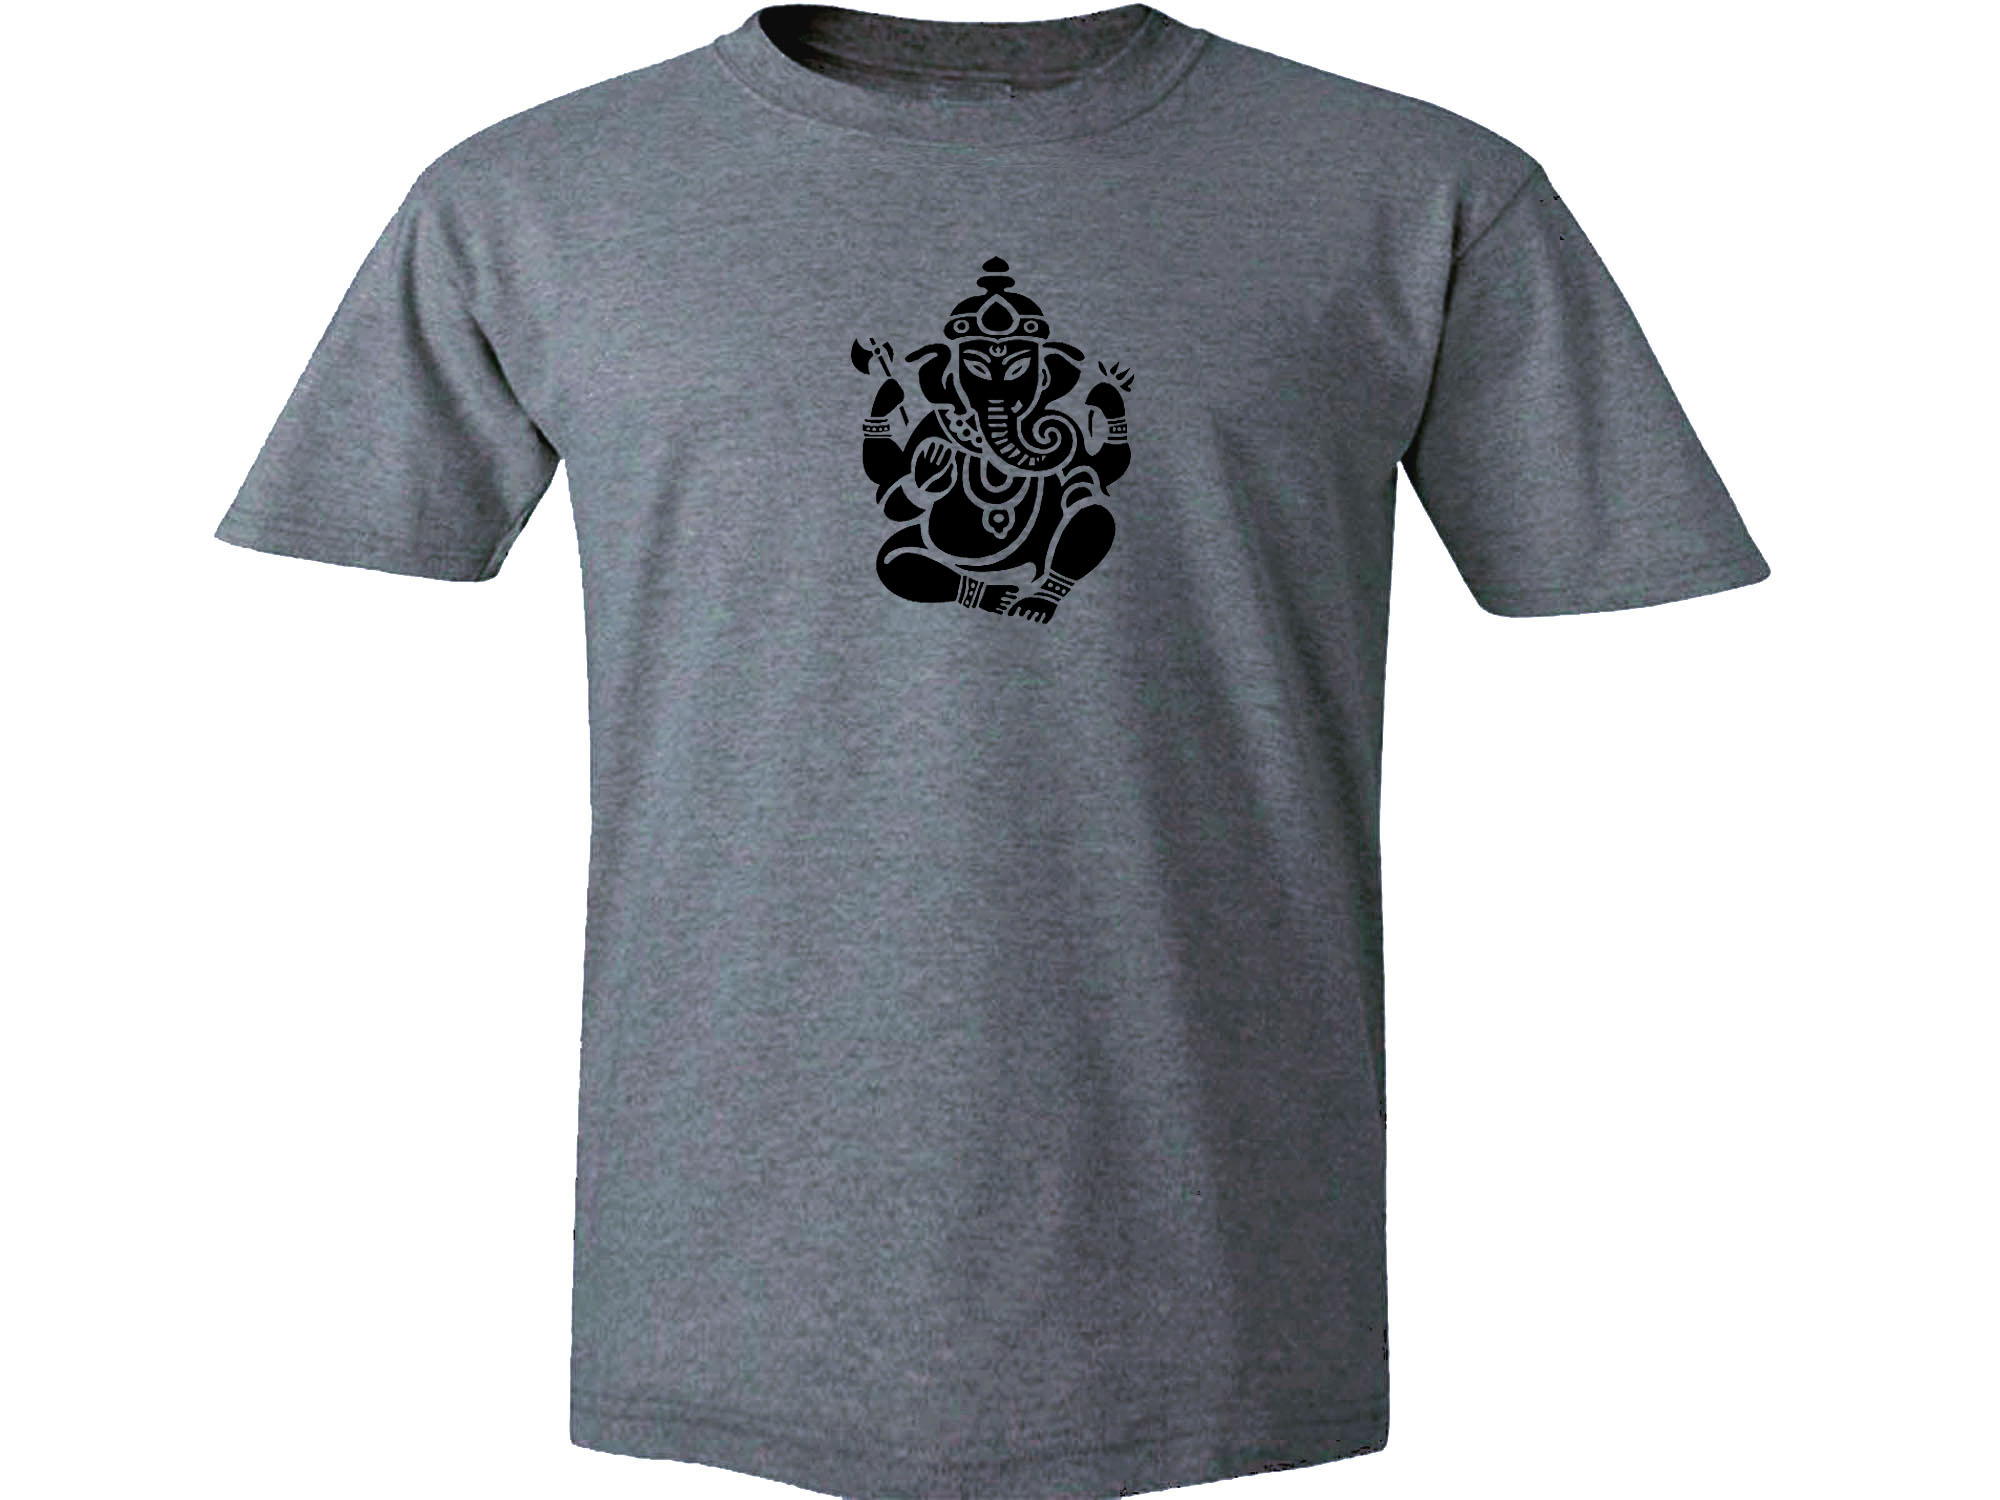 Ganesha Hindu god yoga meditation lotus design gray l t-shirt